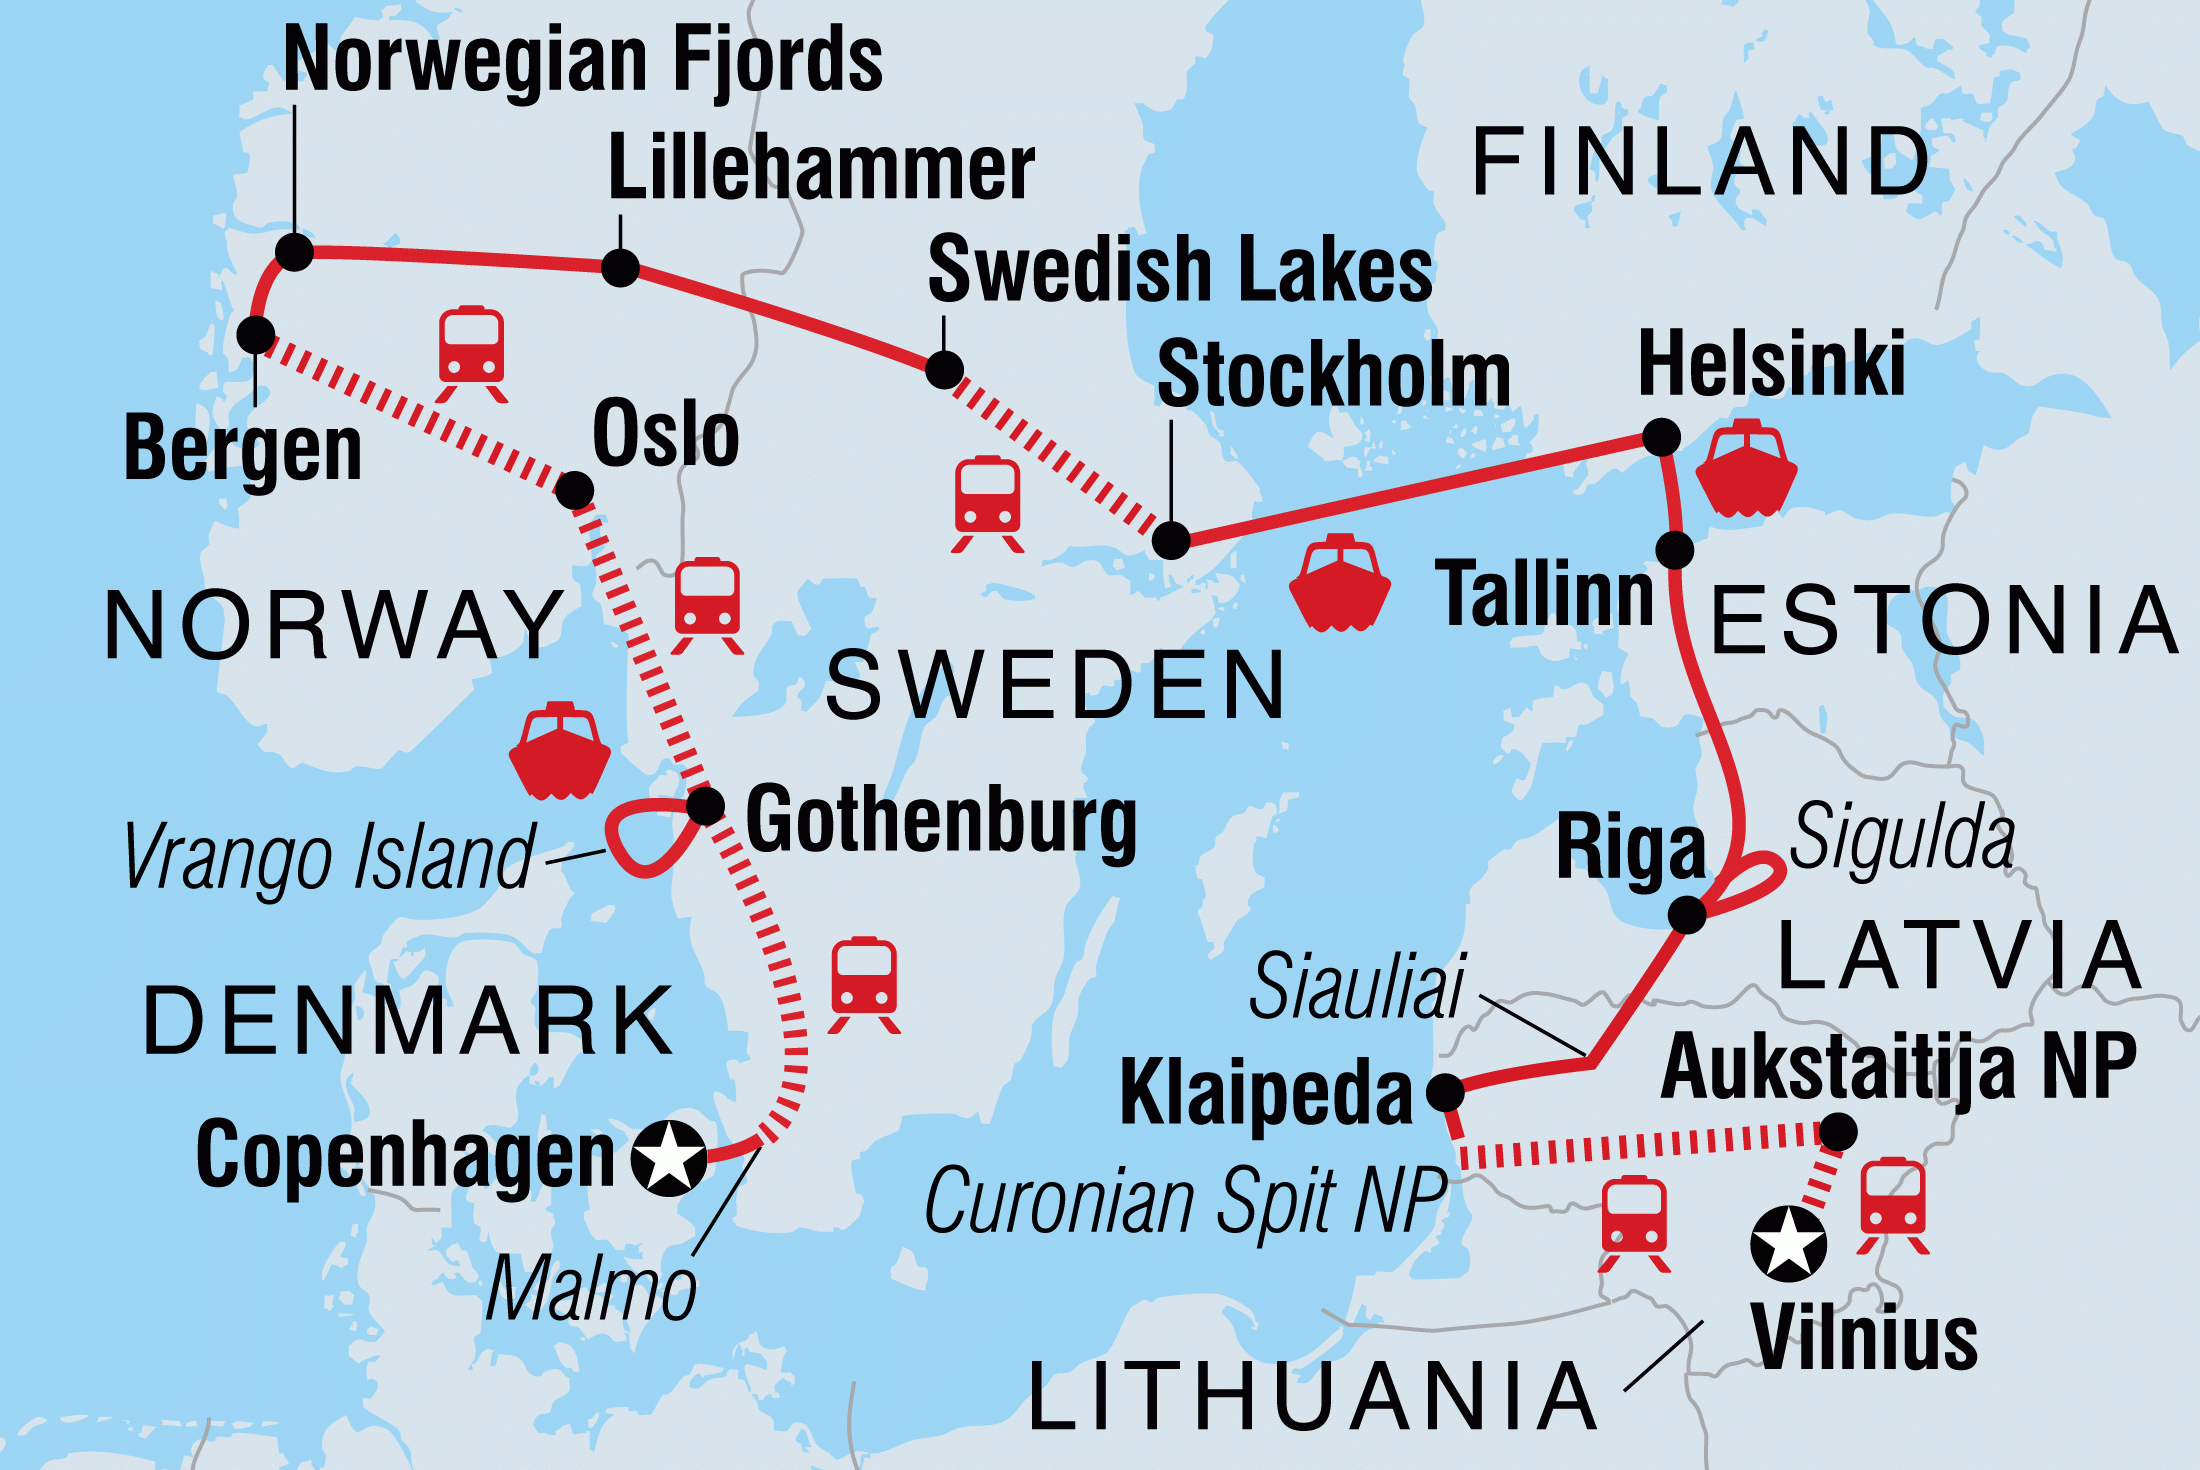 Scandinavia & Baltic States Skandinavien & Baltikum 2nd edition Tram Atlas Northern Europe 